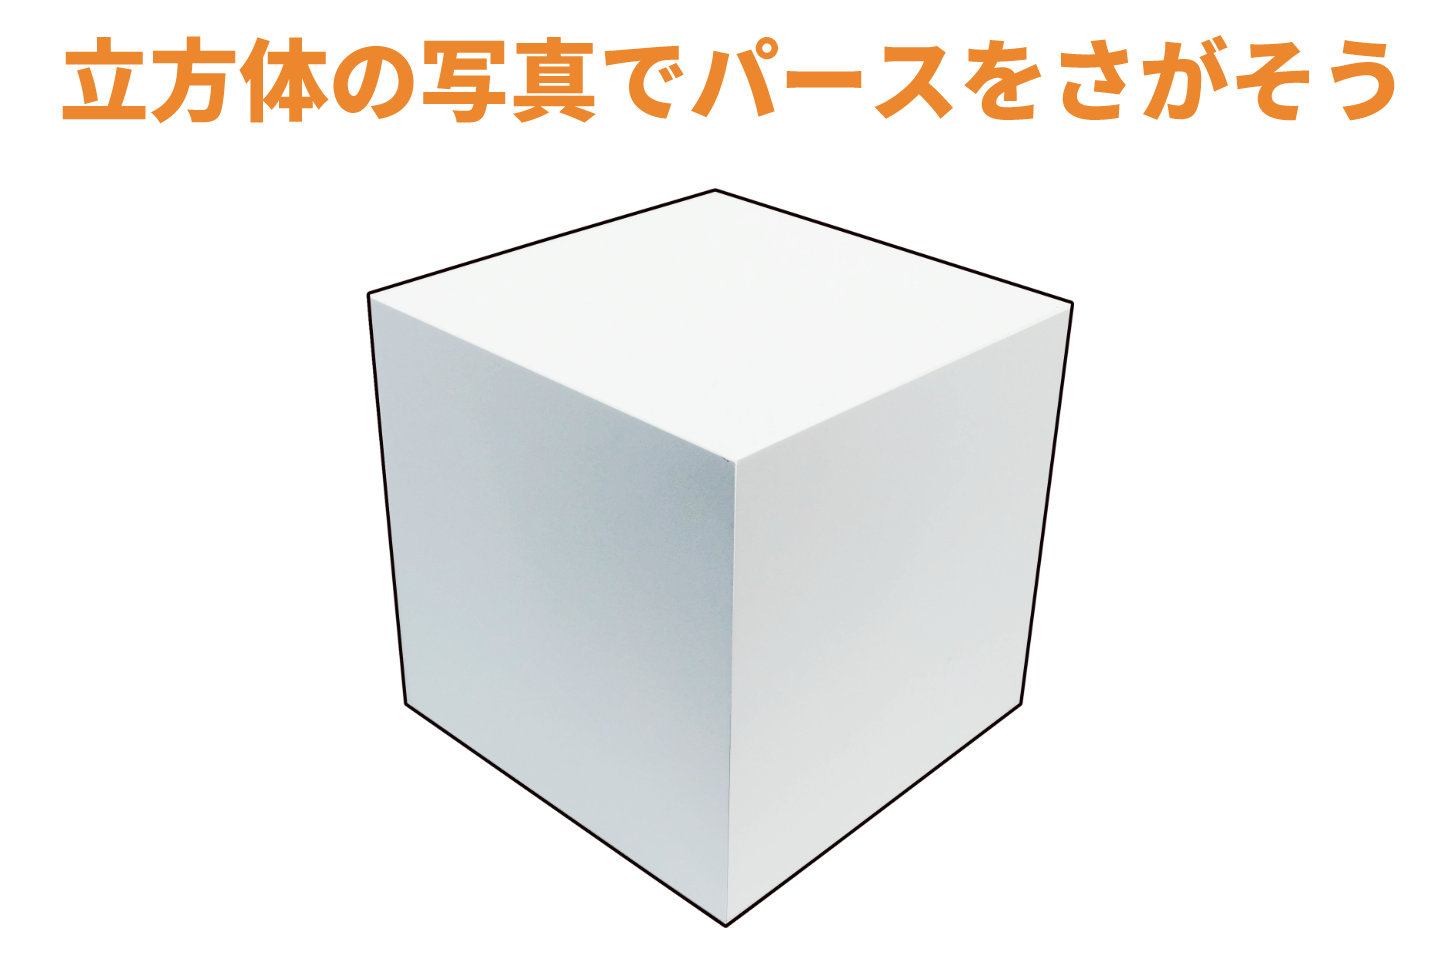 立方体のイラスト